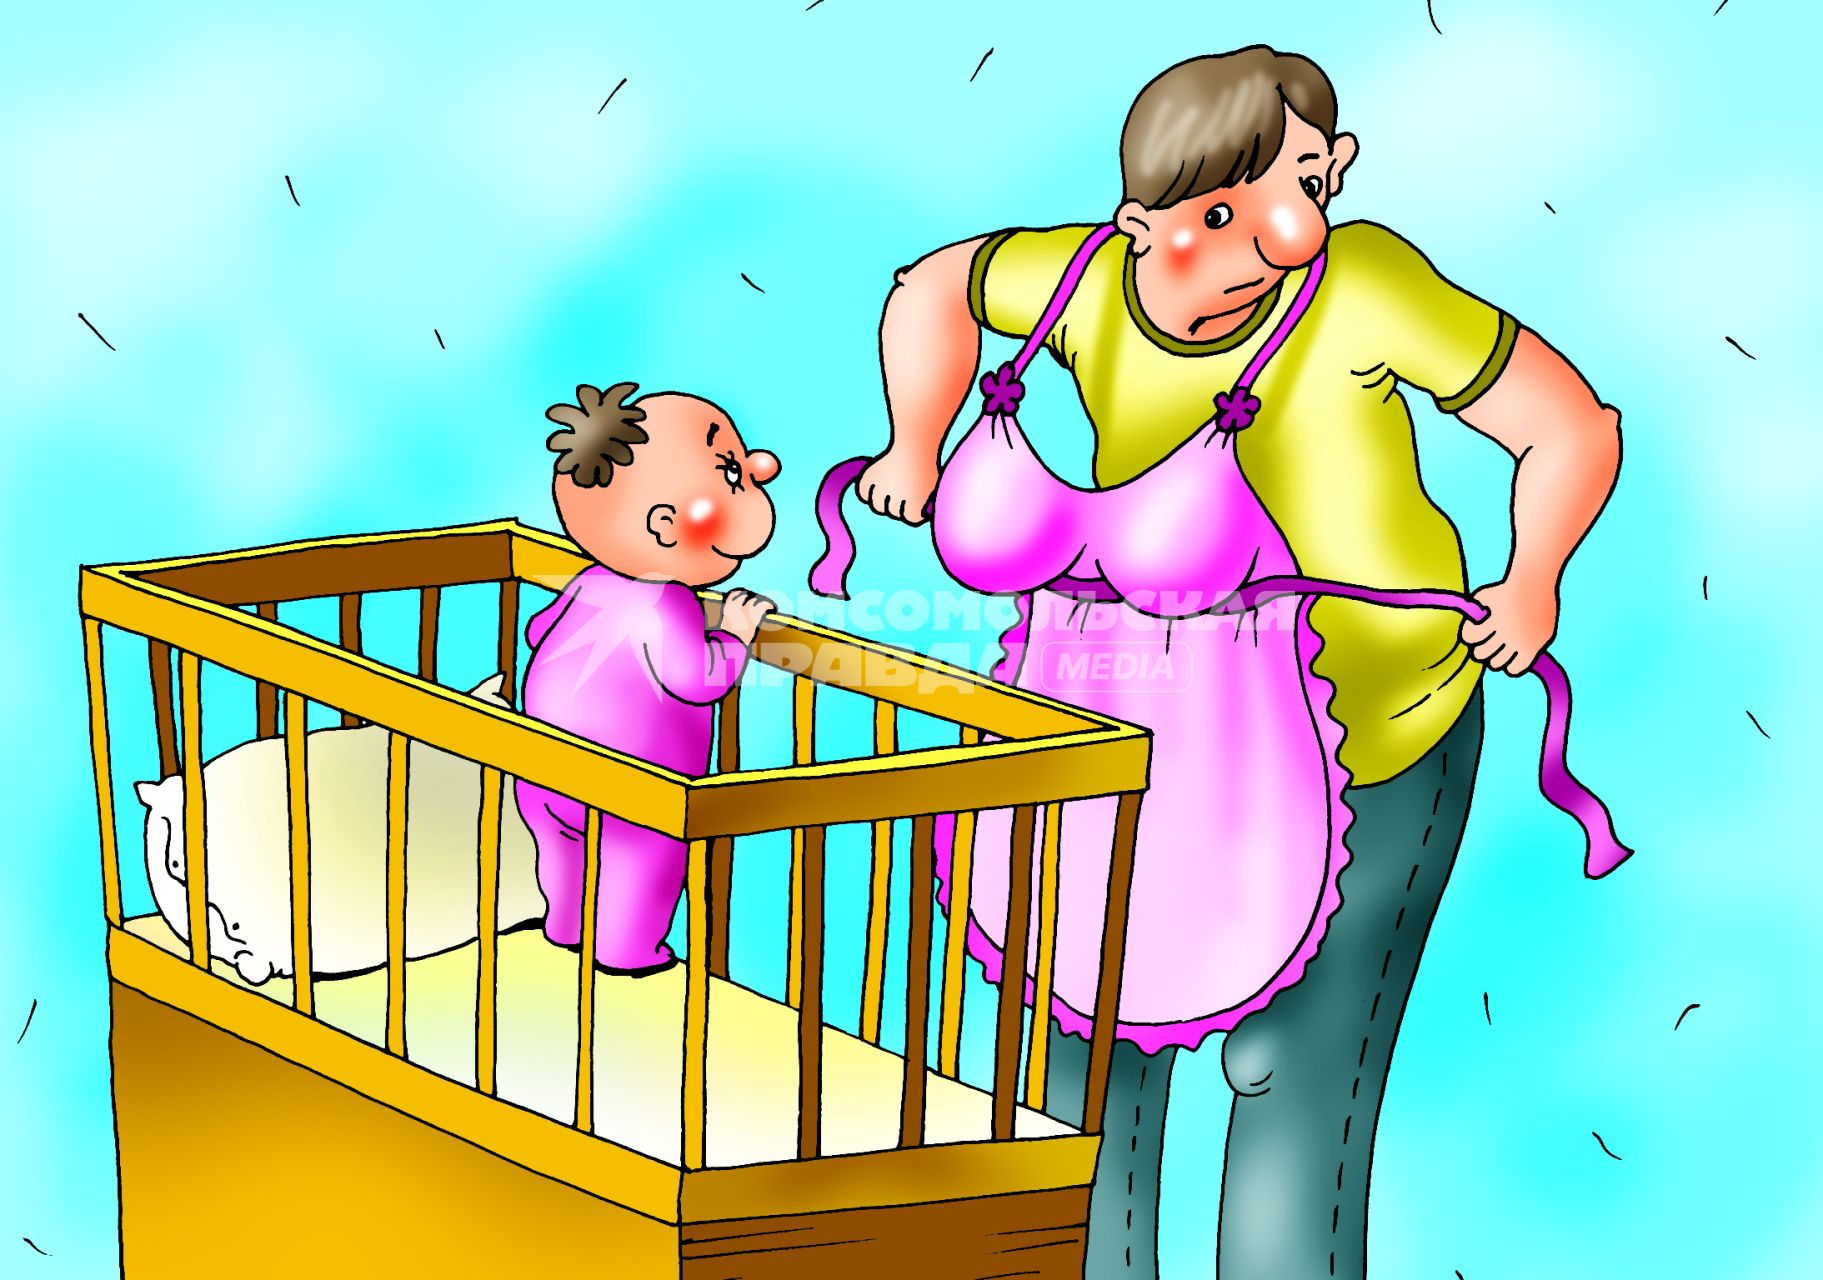 Карикатура на тему мужского отпуска по уходу за ребенком.